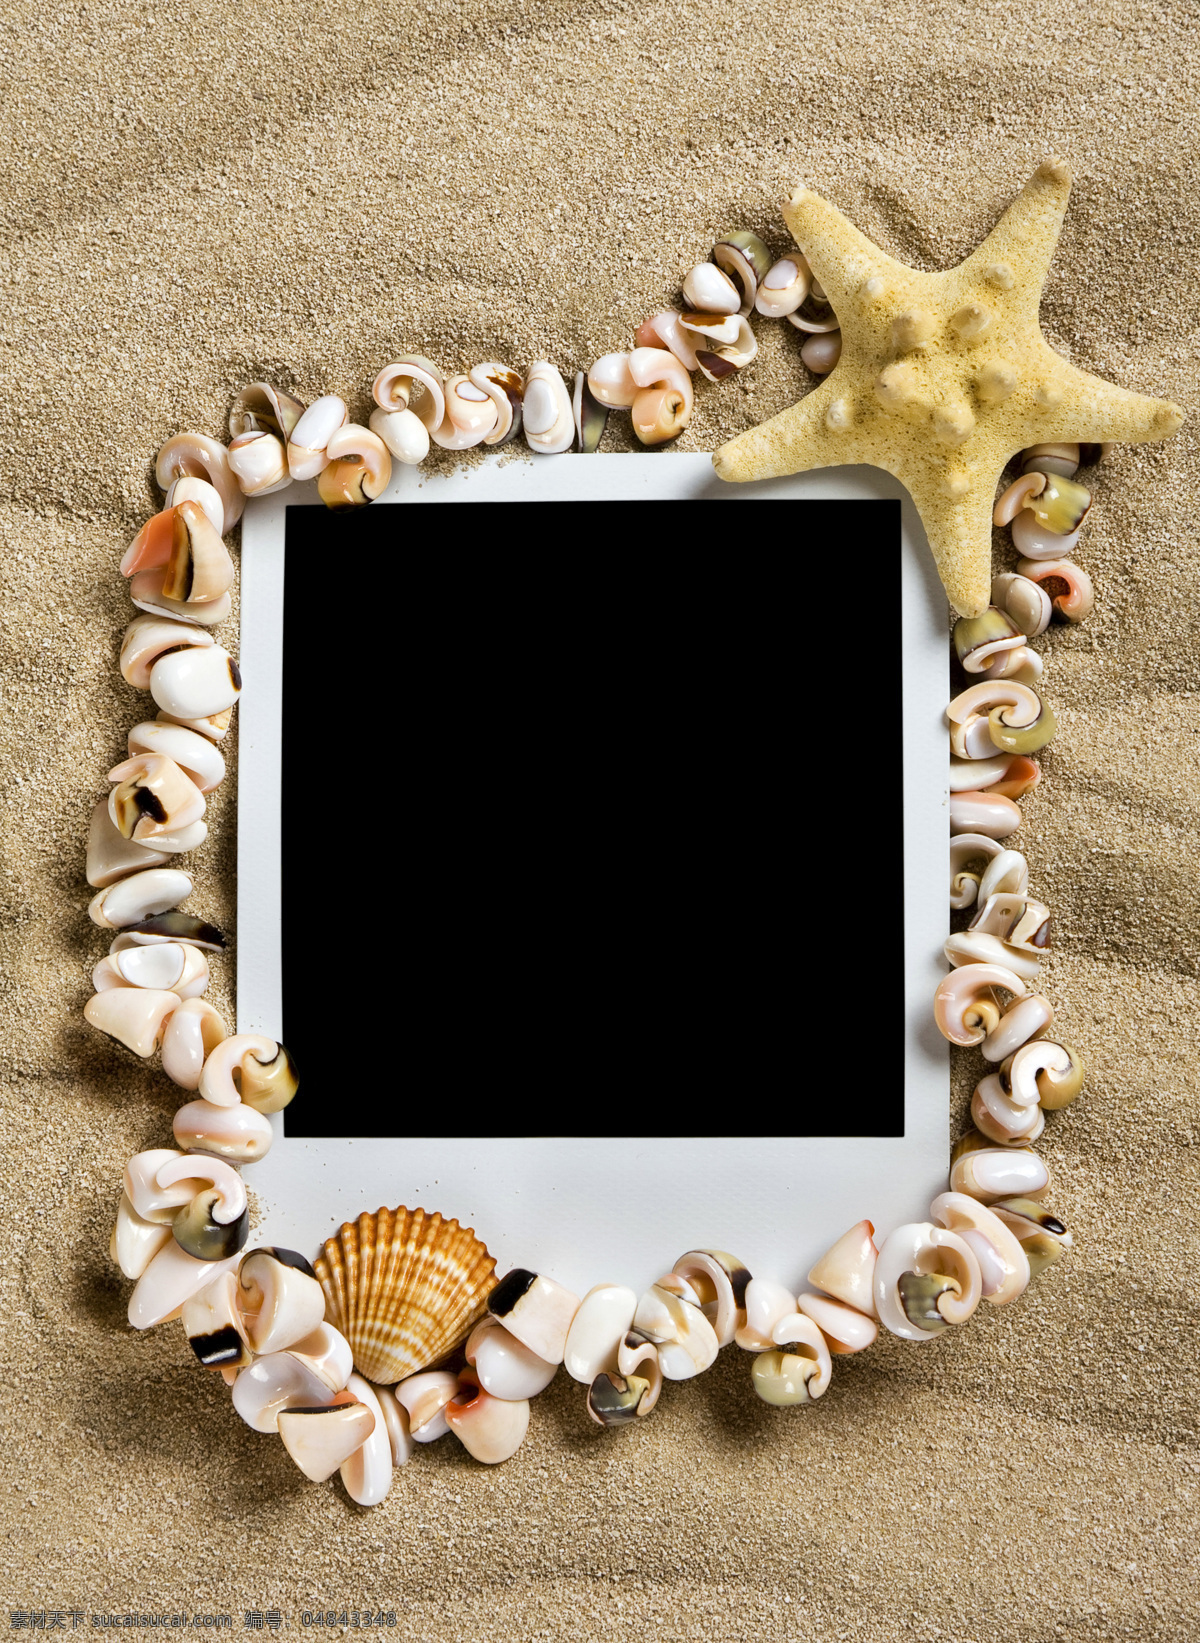 夏日 海滩 照片 模板 夏日海滩 夏天 沙滩 沙子 照片模板 贝壳 海星 高清图片 暑假 旅游 生物世界 大海图片 风景图片